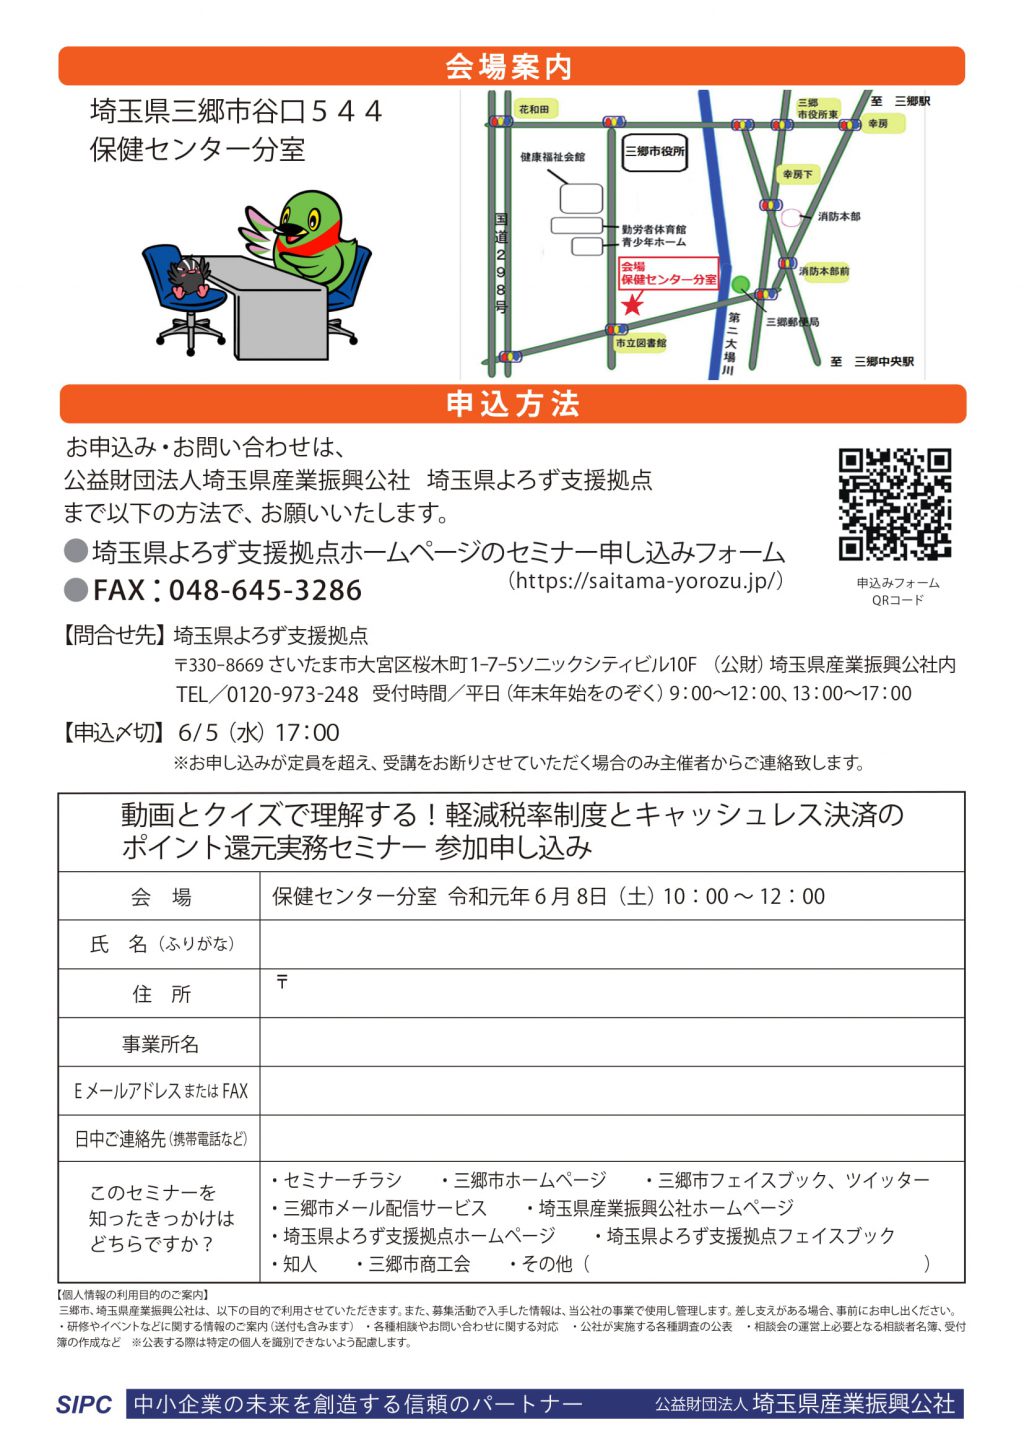 seminar_flyer_misato_ura_20190608-2